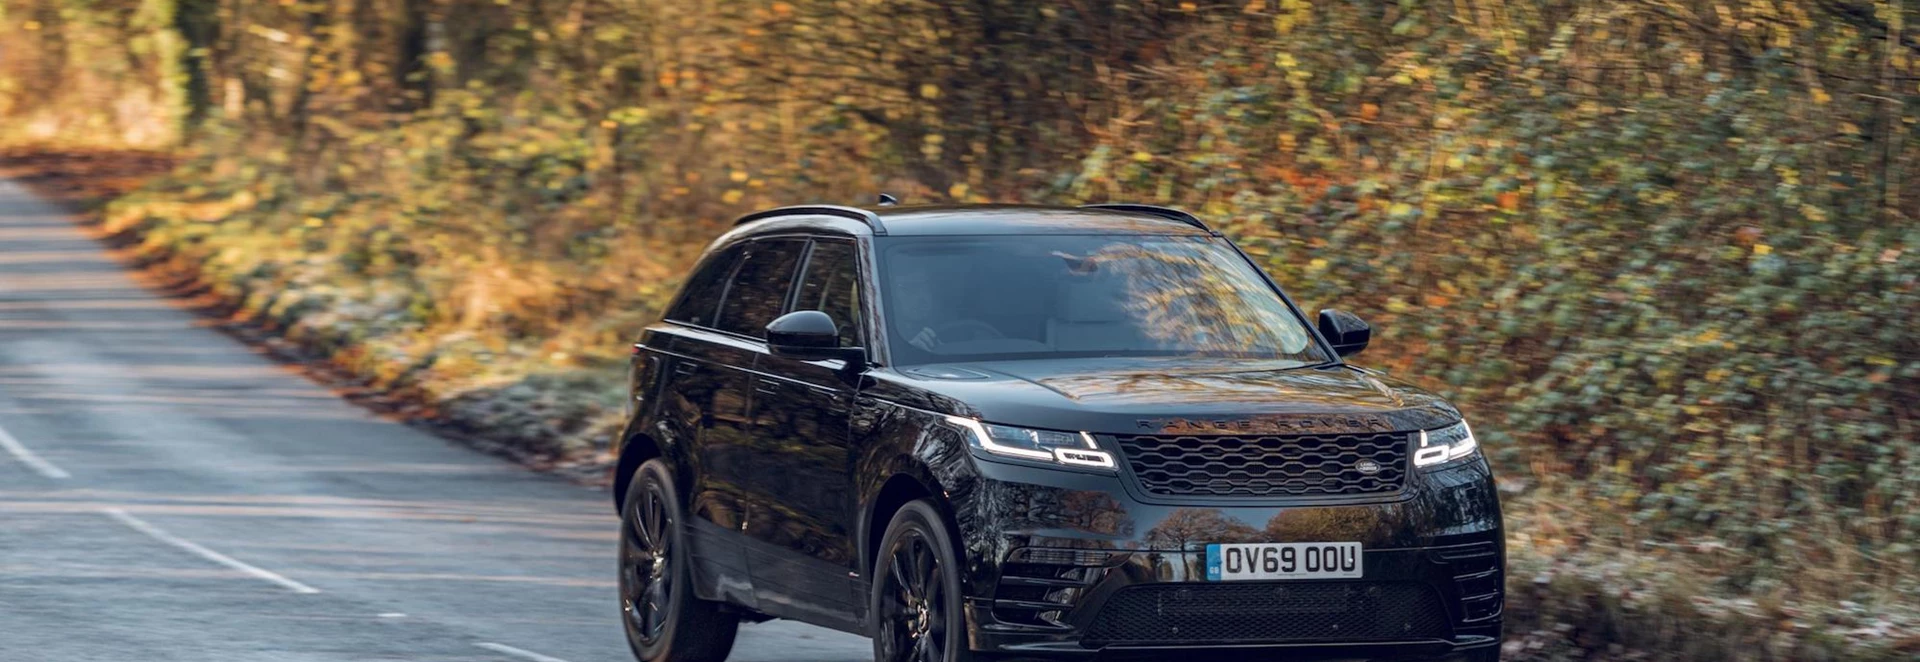 Striking new Range Rover Velar R-Dynamic Black revealed